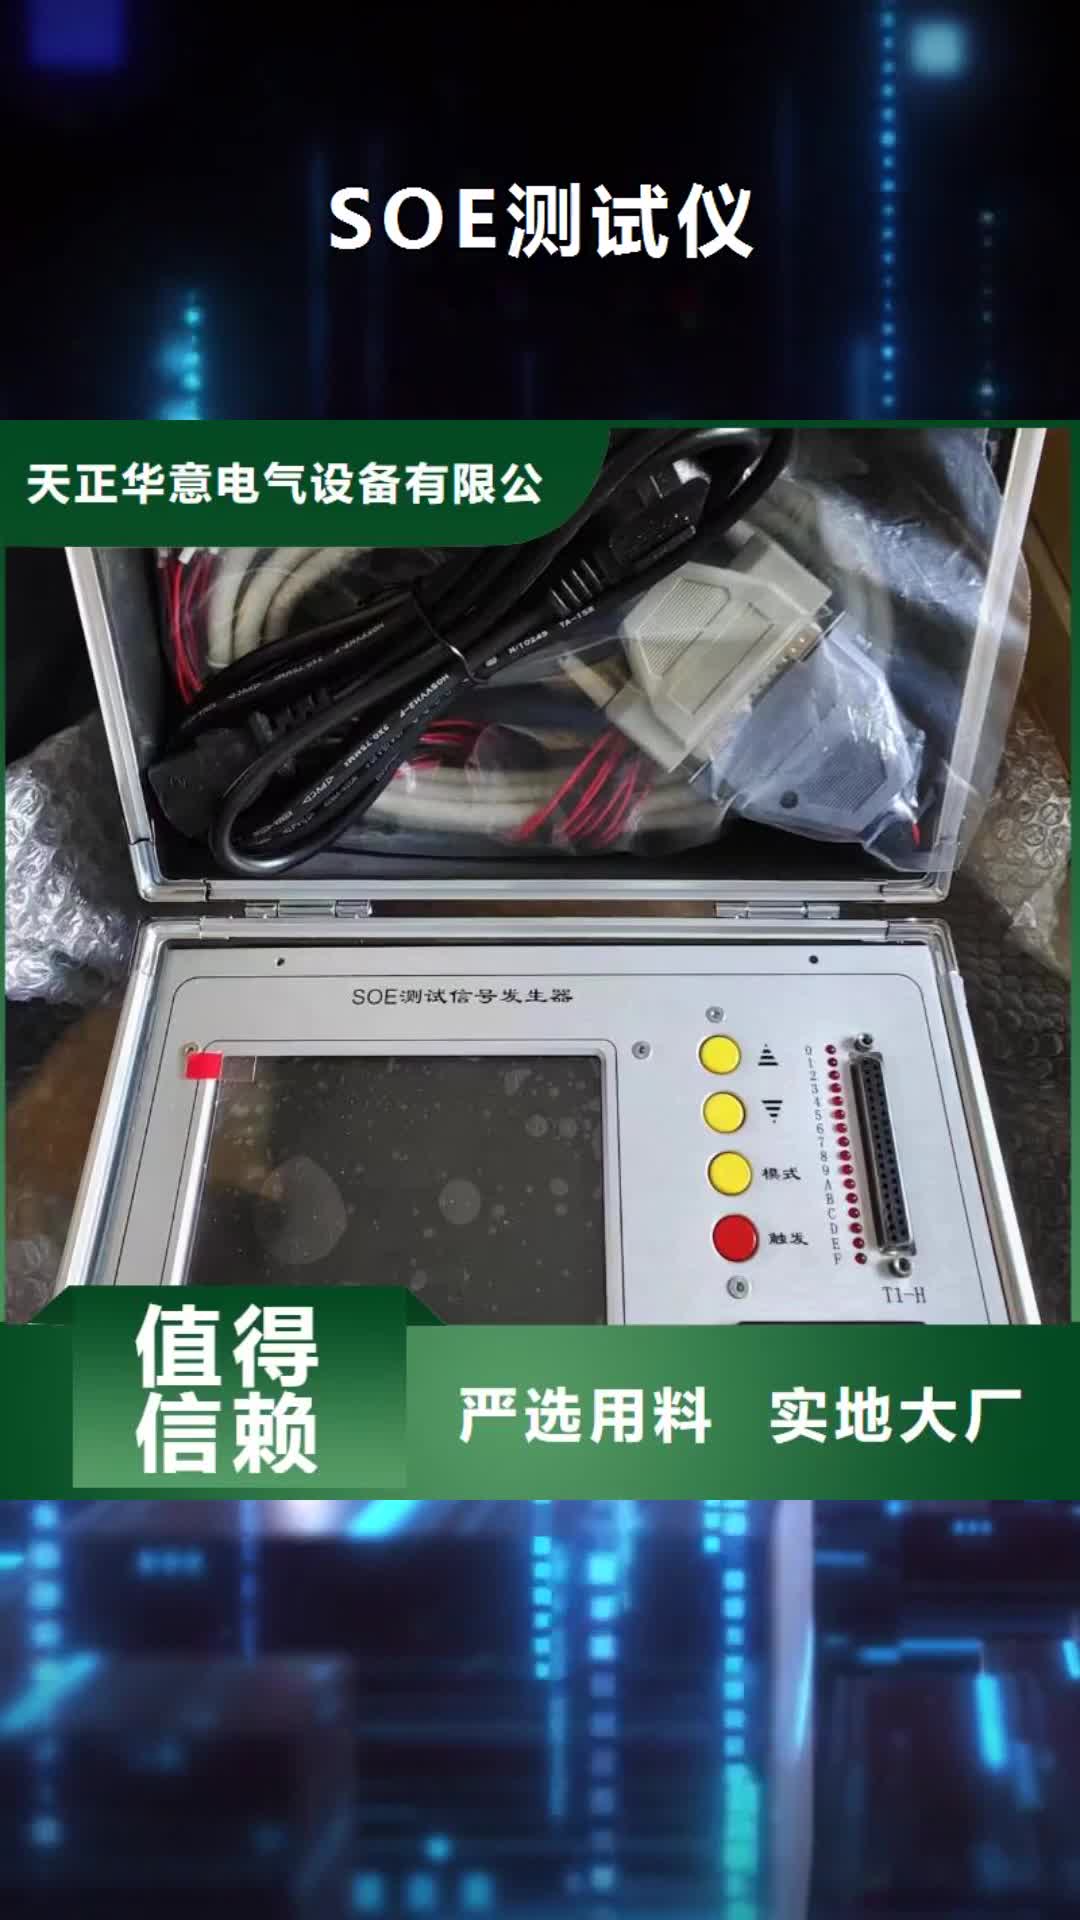 【福州 SOE测试仪,手持直流电阻测试仪自主研发】